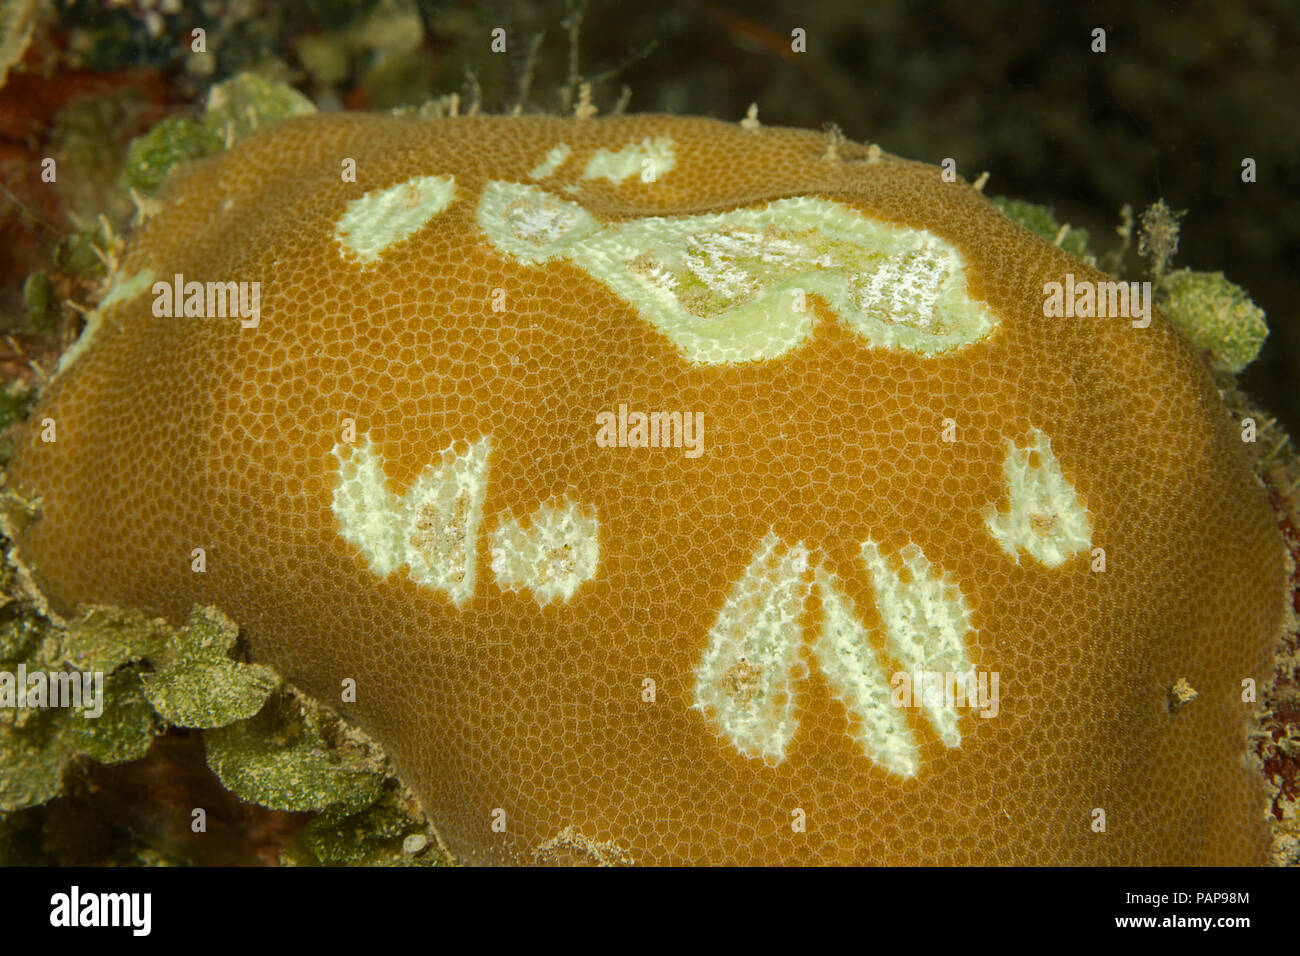 Grandi morsi fuori di coralli duri, molto probabilmente inflitti da una considerevole bumphead pesci pappagallo, Bolbornetopon muricatum, Yap, Micronesia. Foto Stock